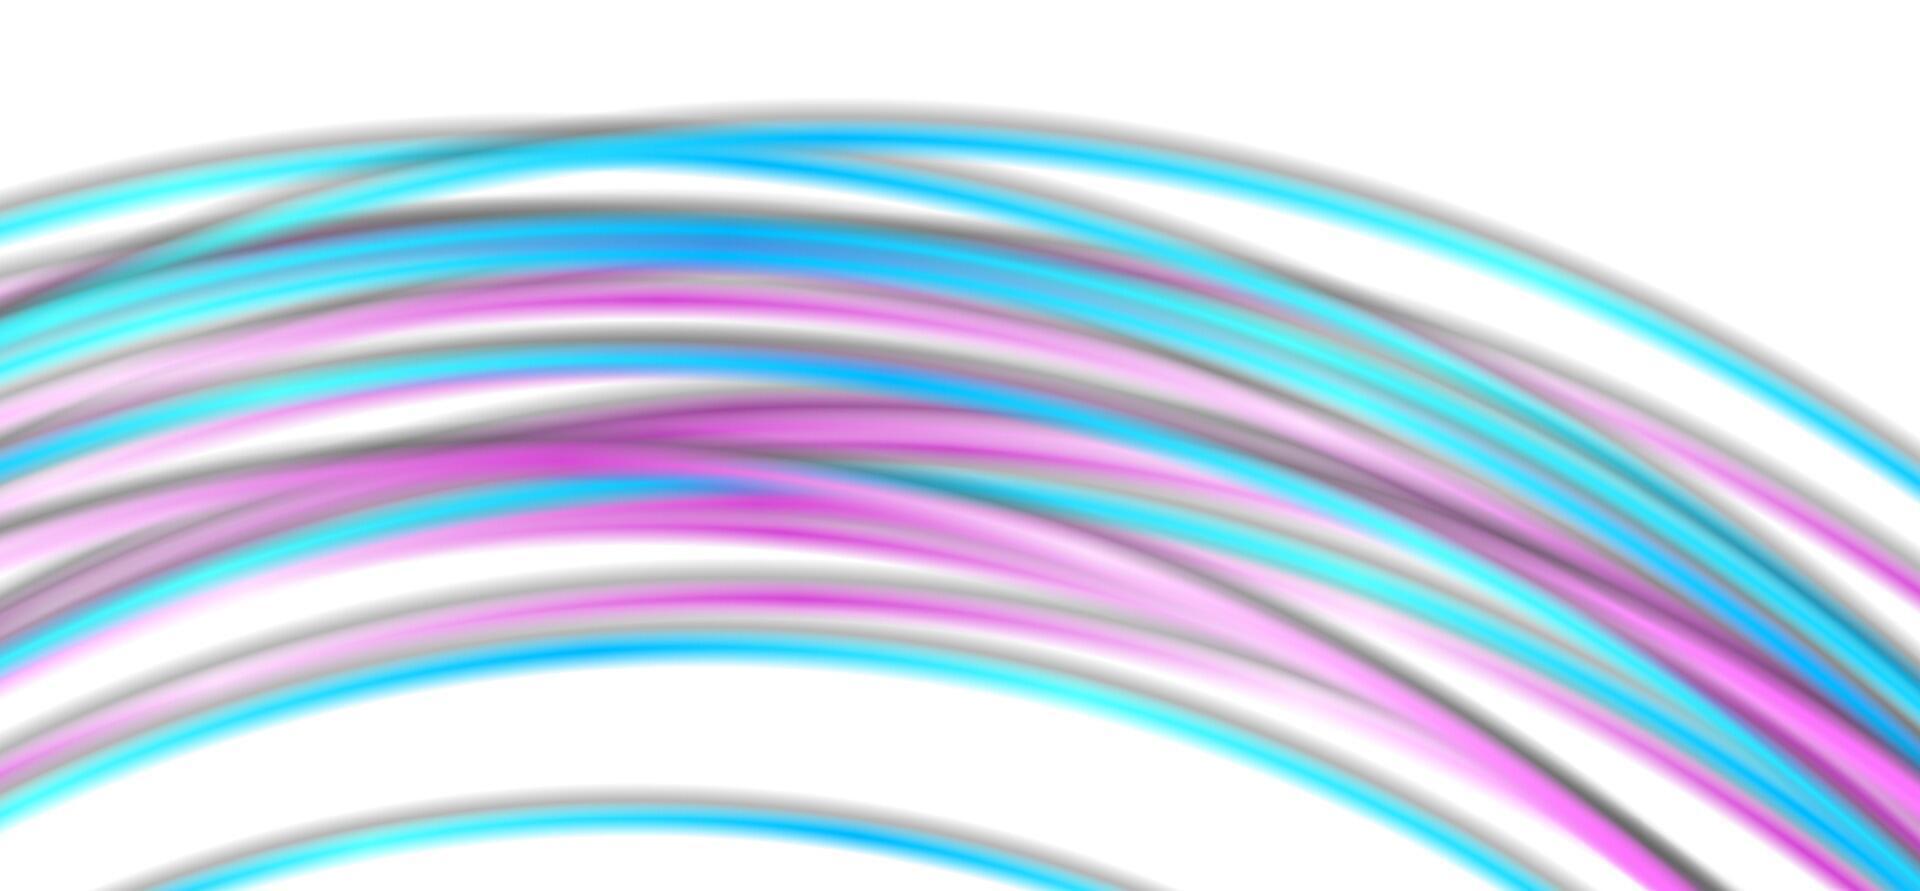 Blau lila glatt wellig gebogen Linien abstrakt Hintergrund vektor